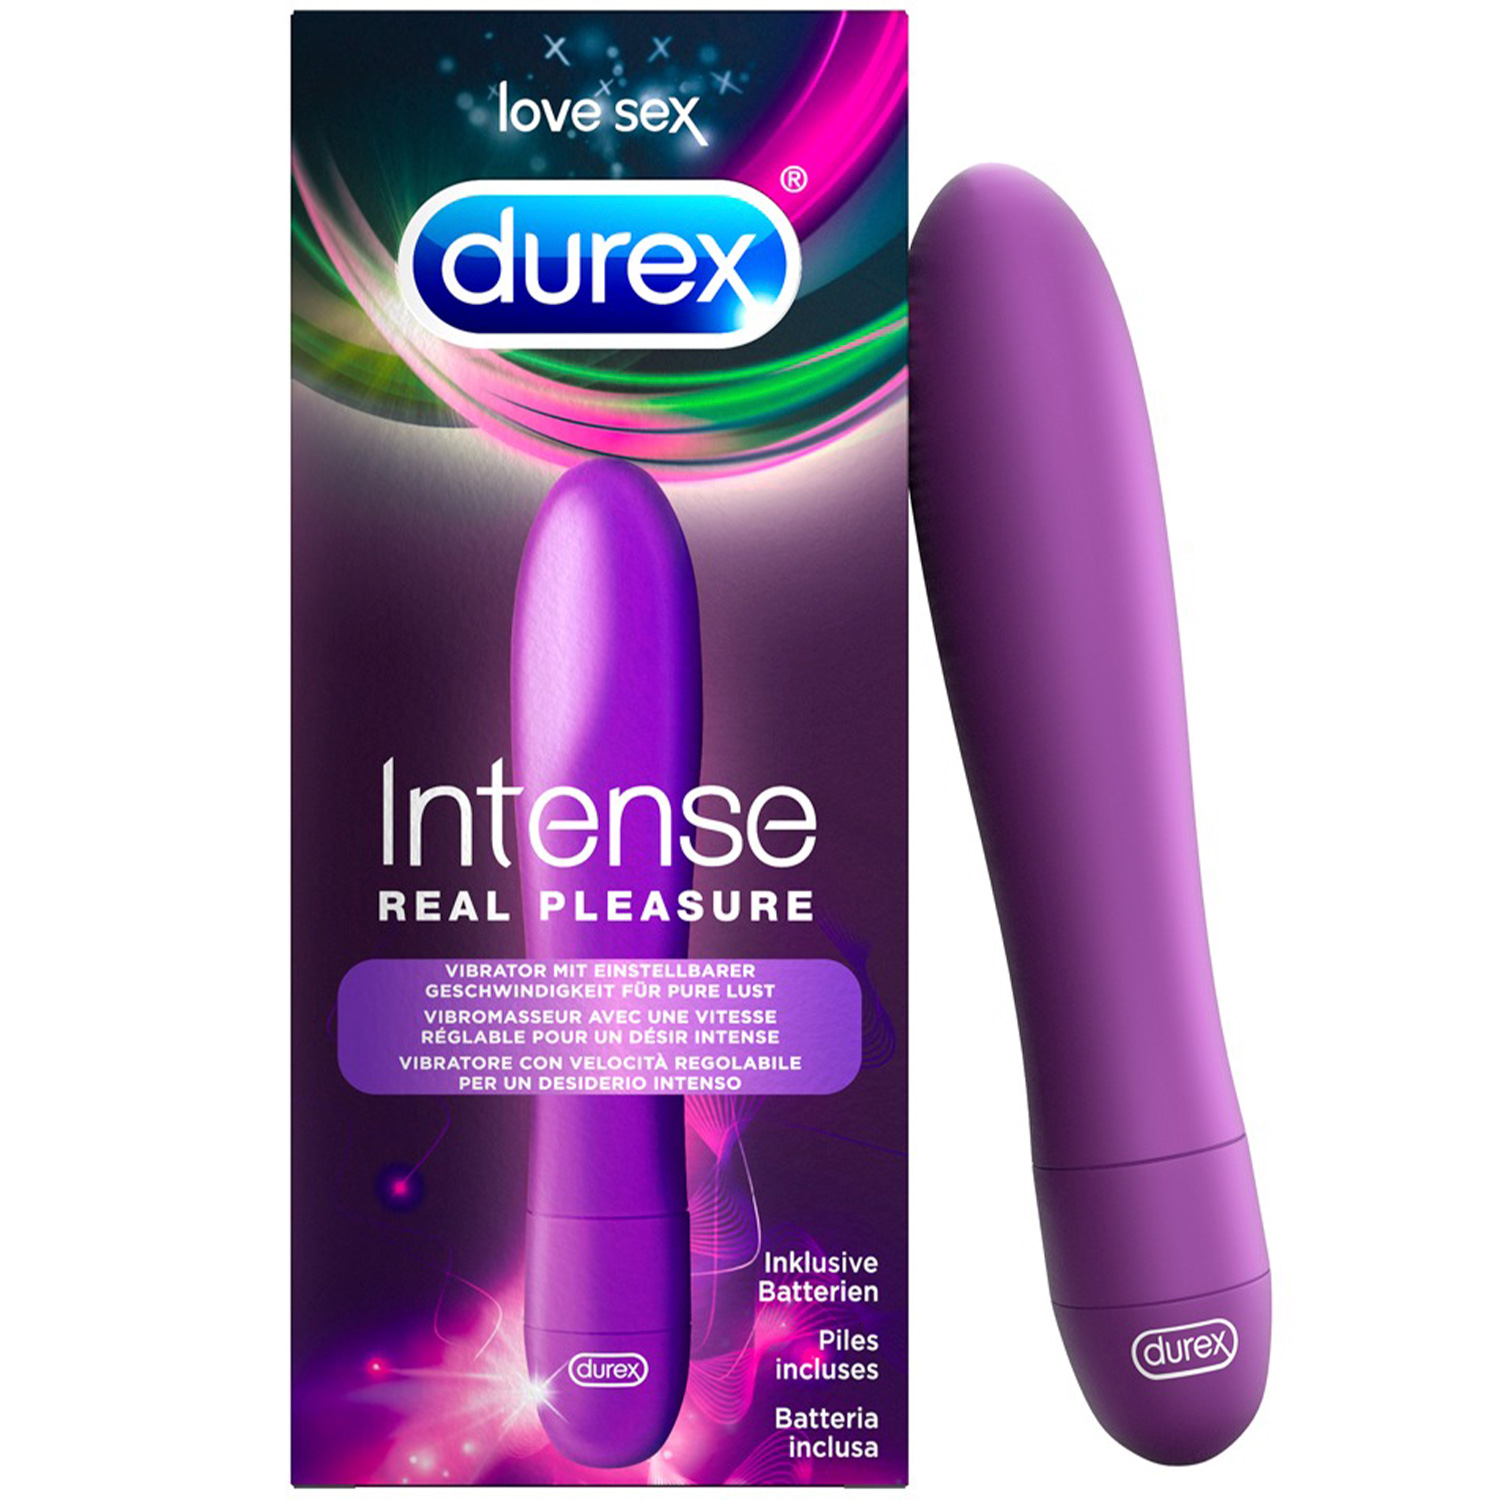 Durex Intense Real Pleasure Vibrator - Durex